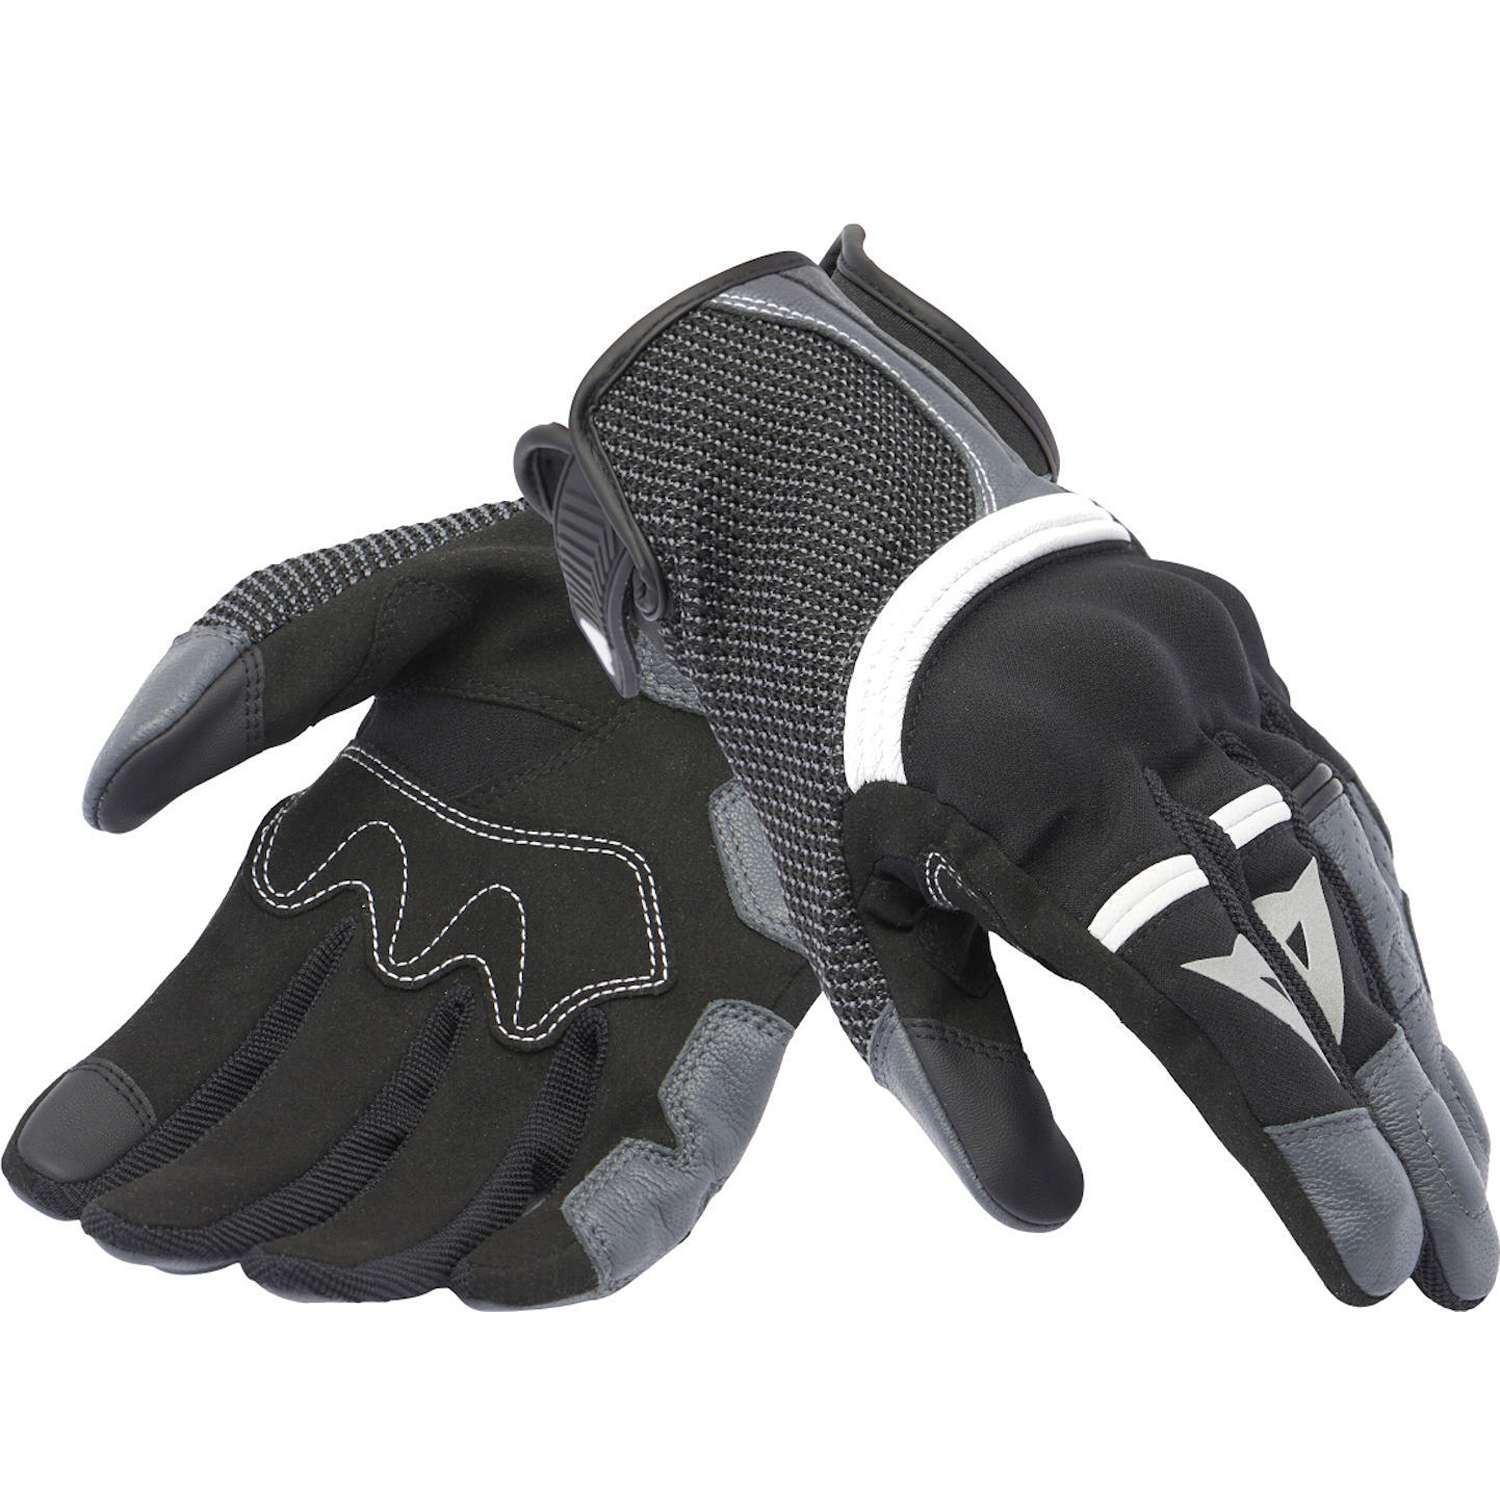 Image of Dainese Namib Gloves Black Iron Gate Size XS ID 8051019681225